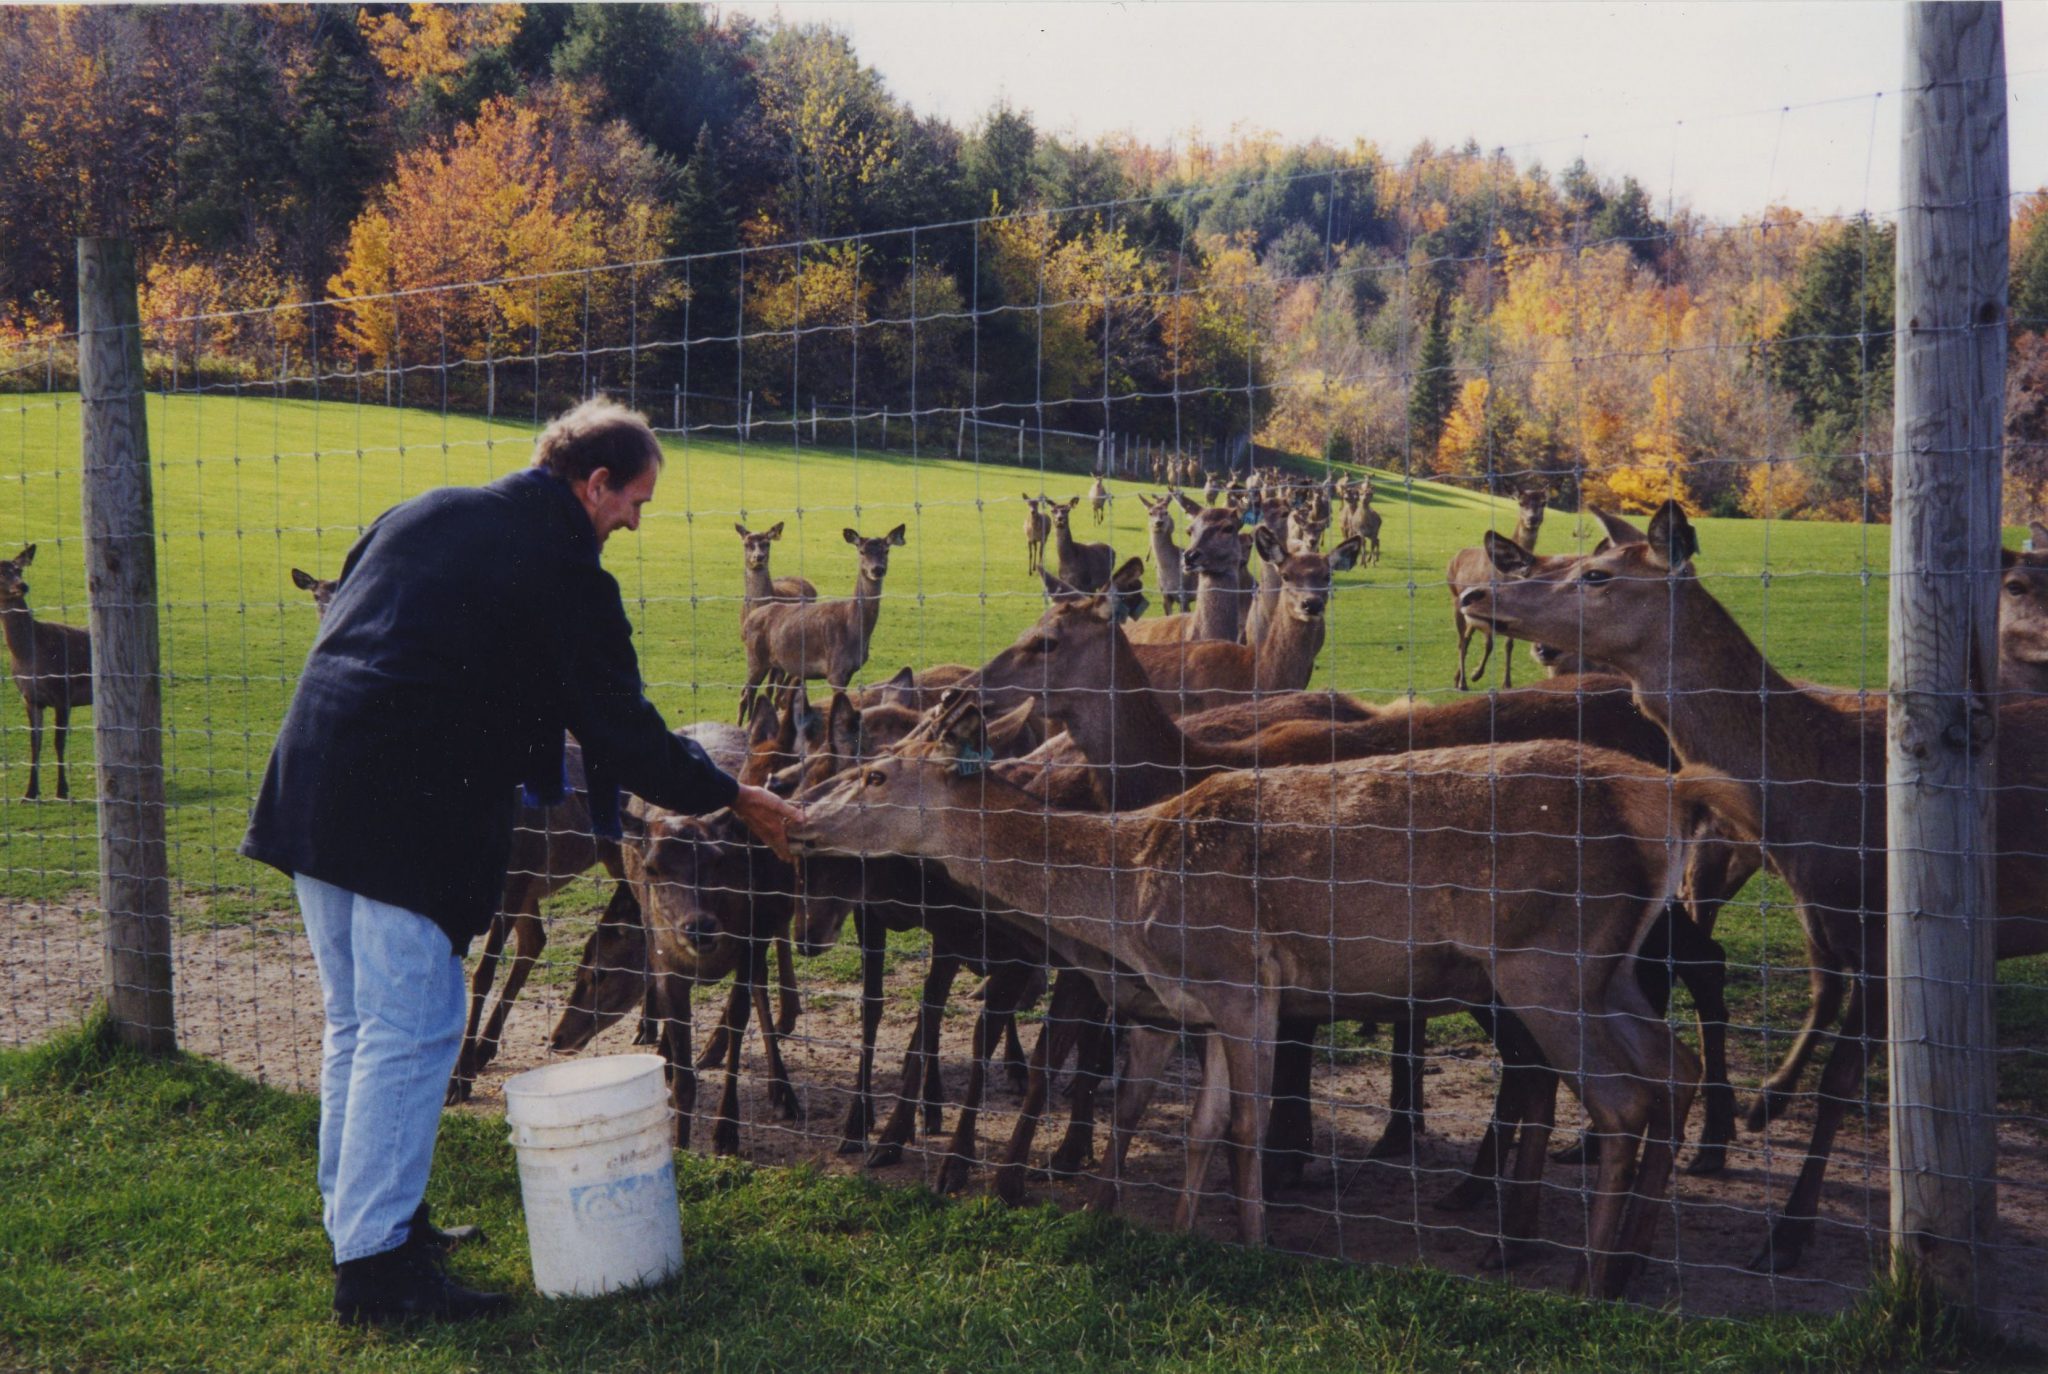 Feeding deer in Hawkesbury